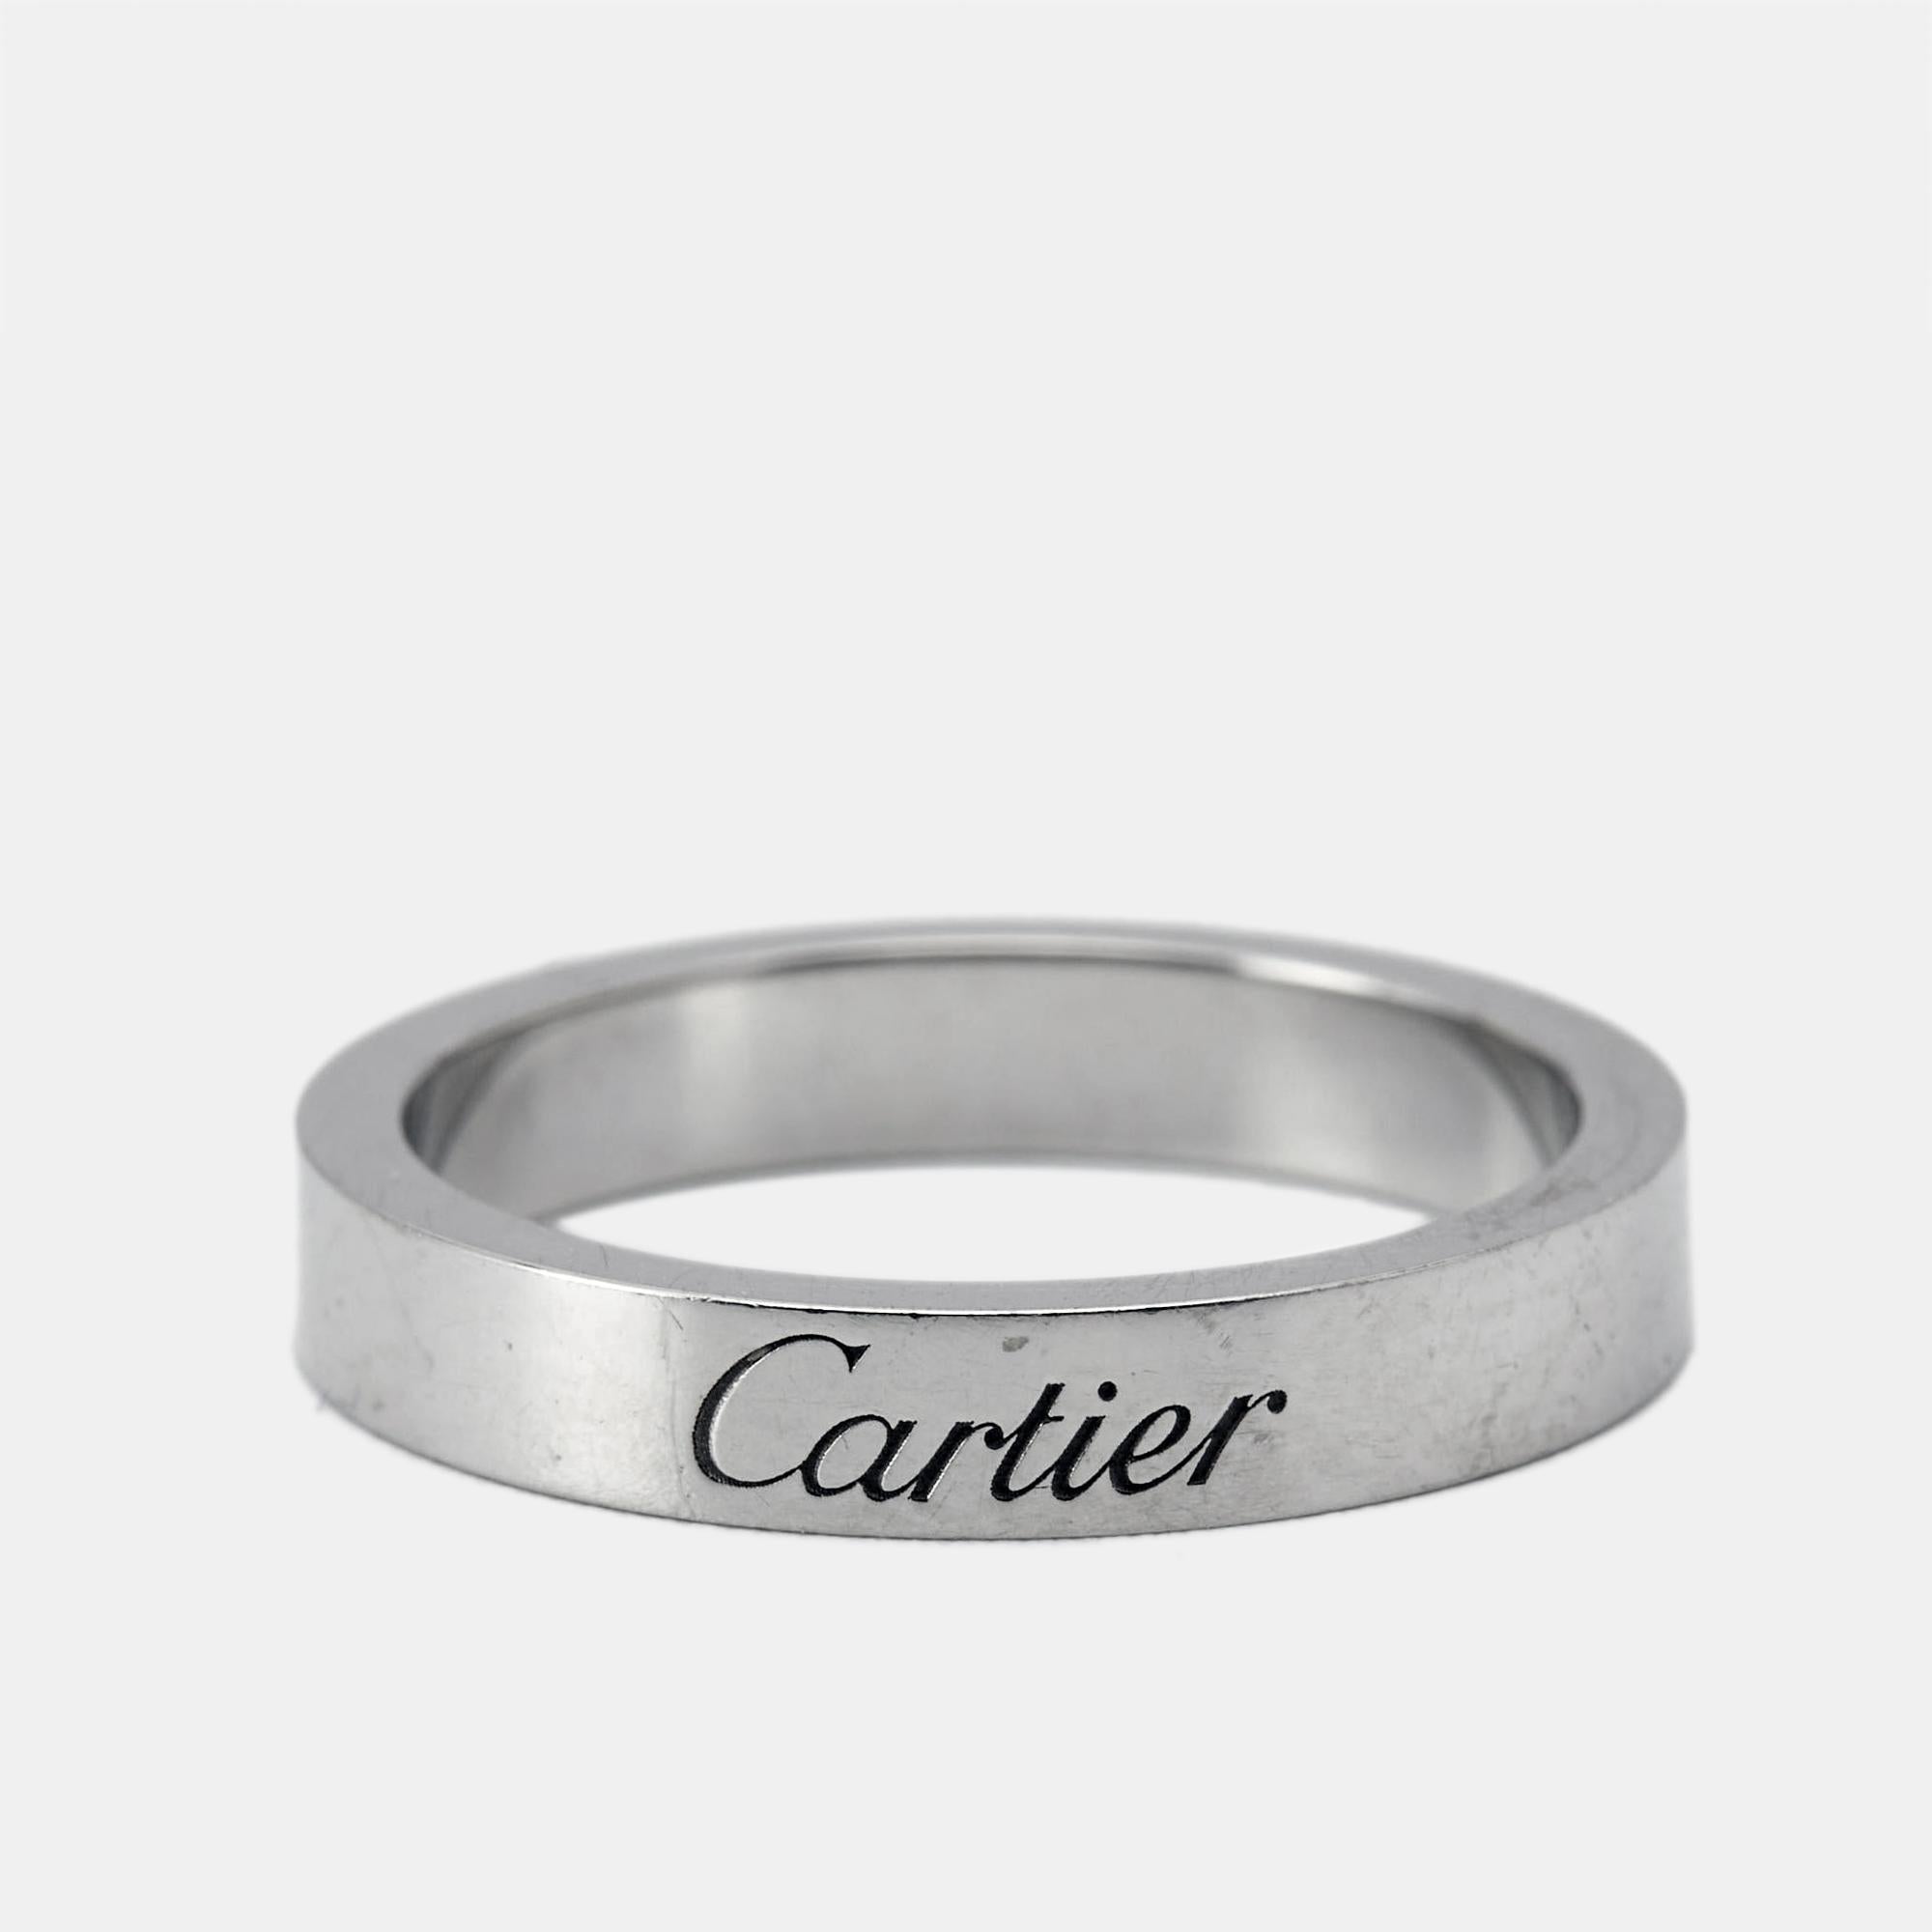 Fabriquée en platine luxueux, l'alliance C.C de Cartier est d'une sophistication intemporelle. Son design élégant présente le motif emblématique du 